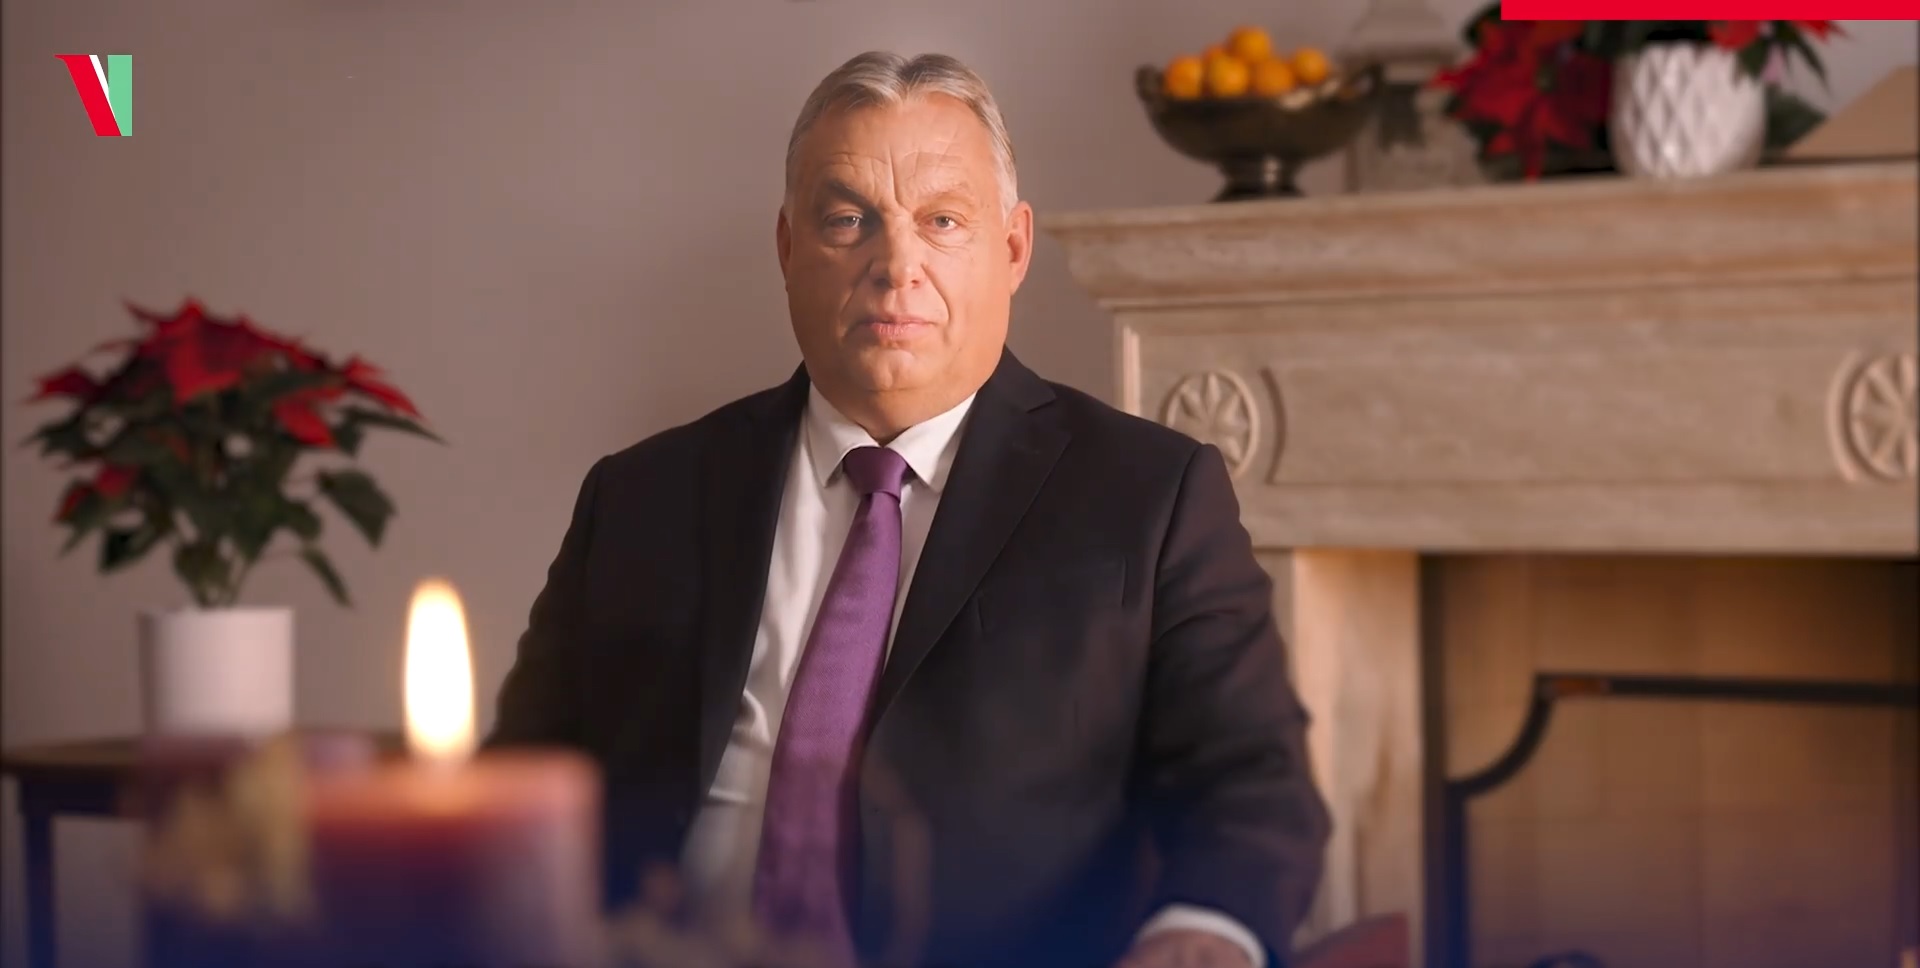 Izzasztó kérdéseket tettek fel Orbán Viktornak Advent alkalmából